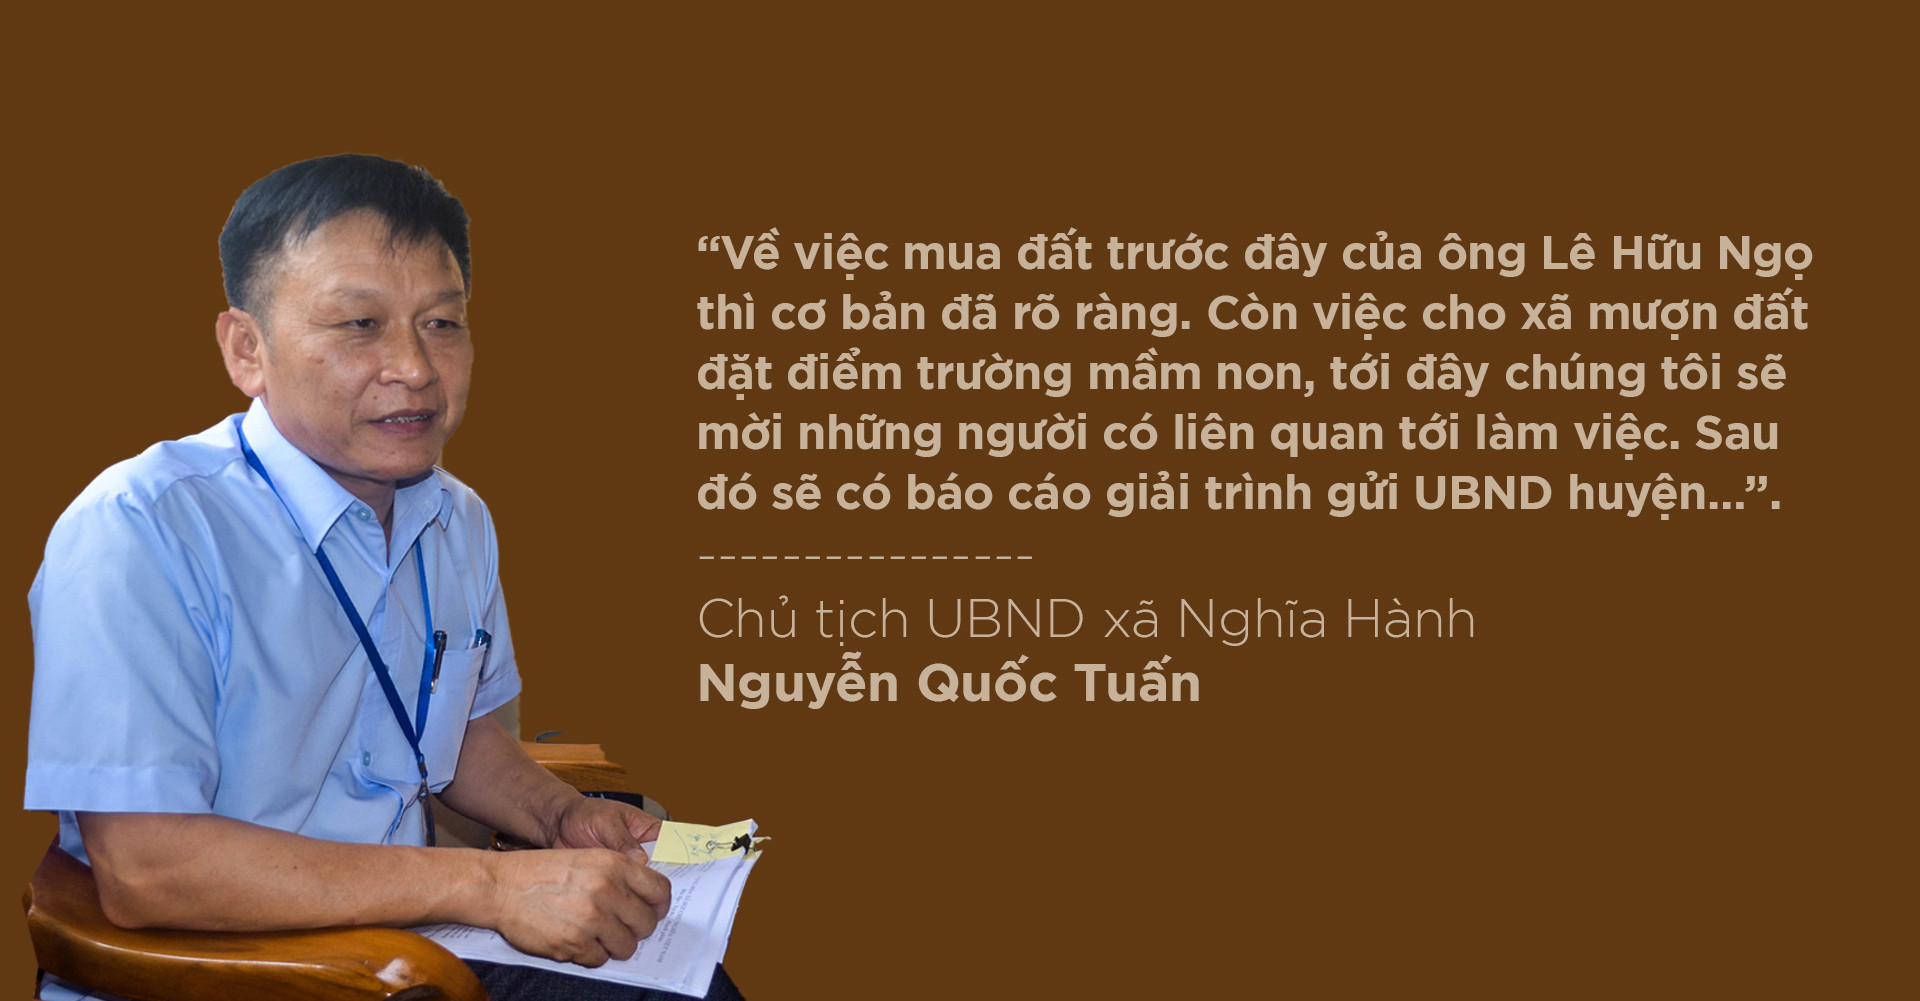 Chủ tịch UBND xã Nghĩa Hành, ông Nguyễn Quốc Tuấn trao đổi với P.V Báo Nghệ An.